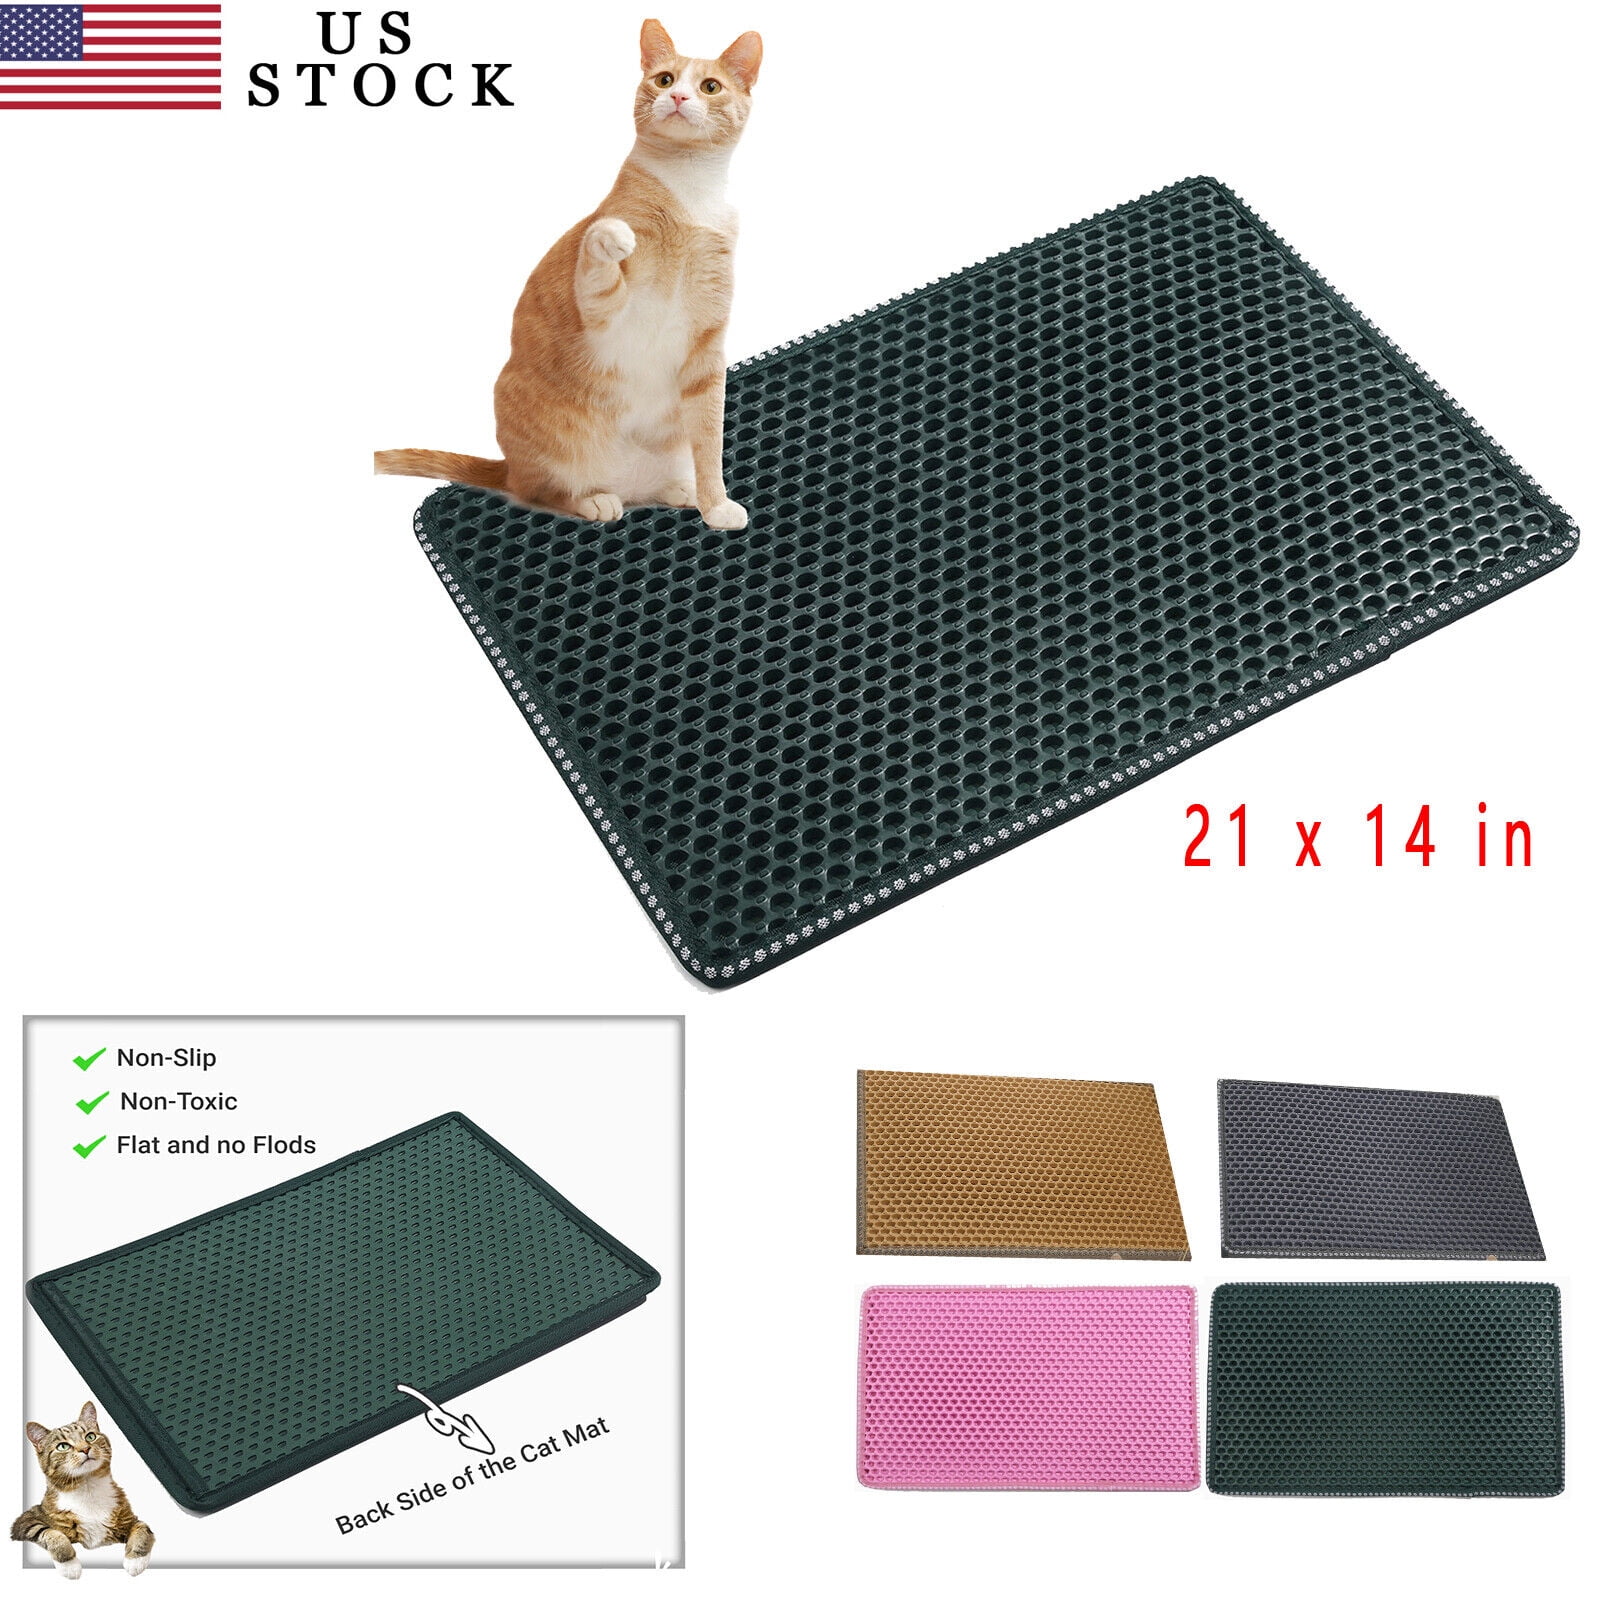 Double-layer Non-slip Cat Litter Mat